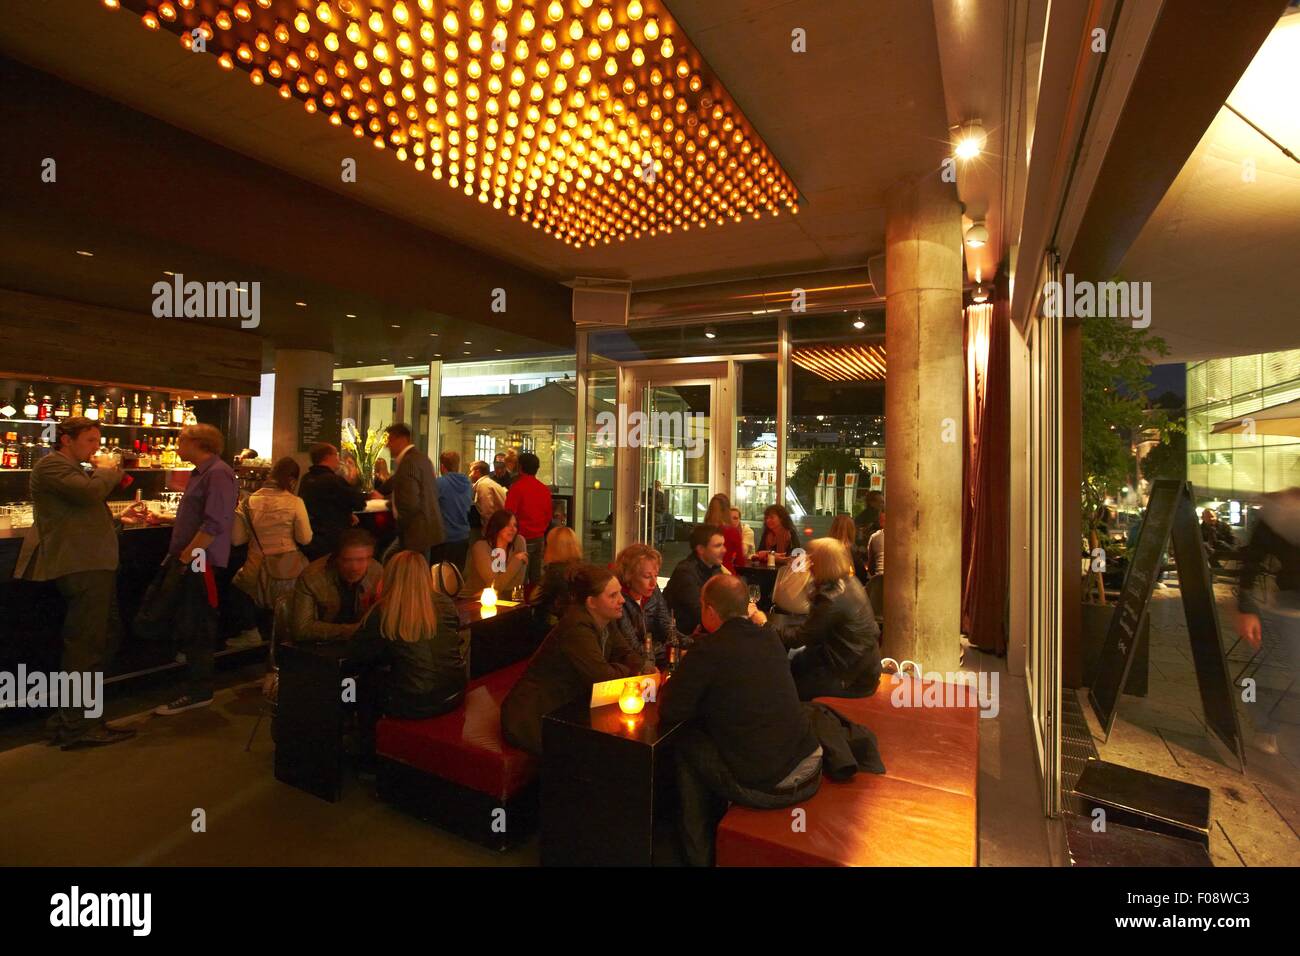 People at Waranga bar in Stuttgart, Germany Stock Photo